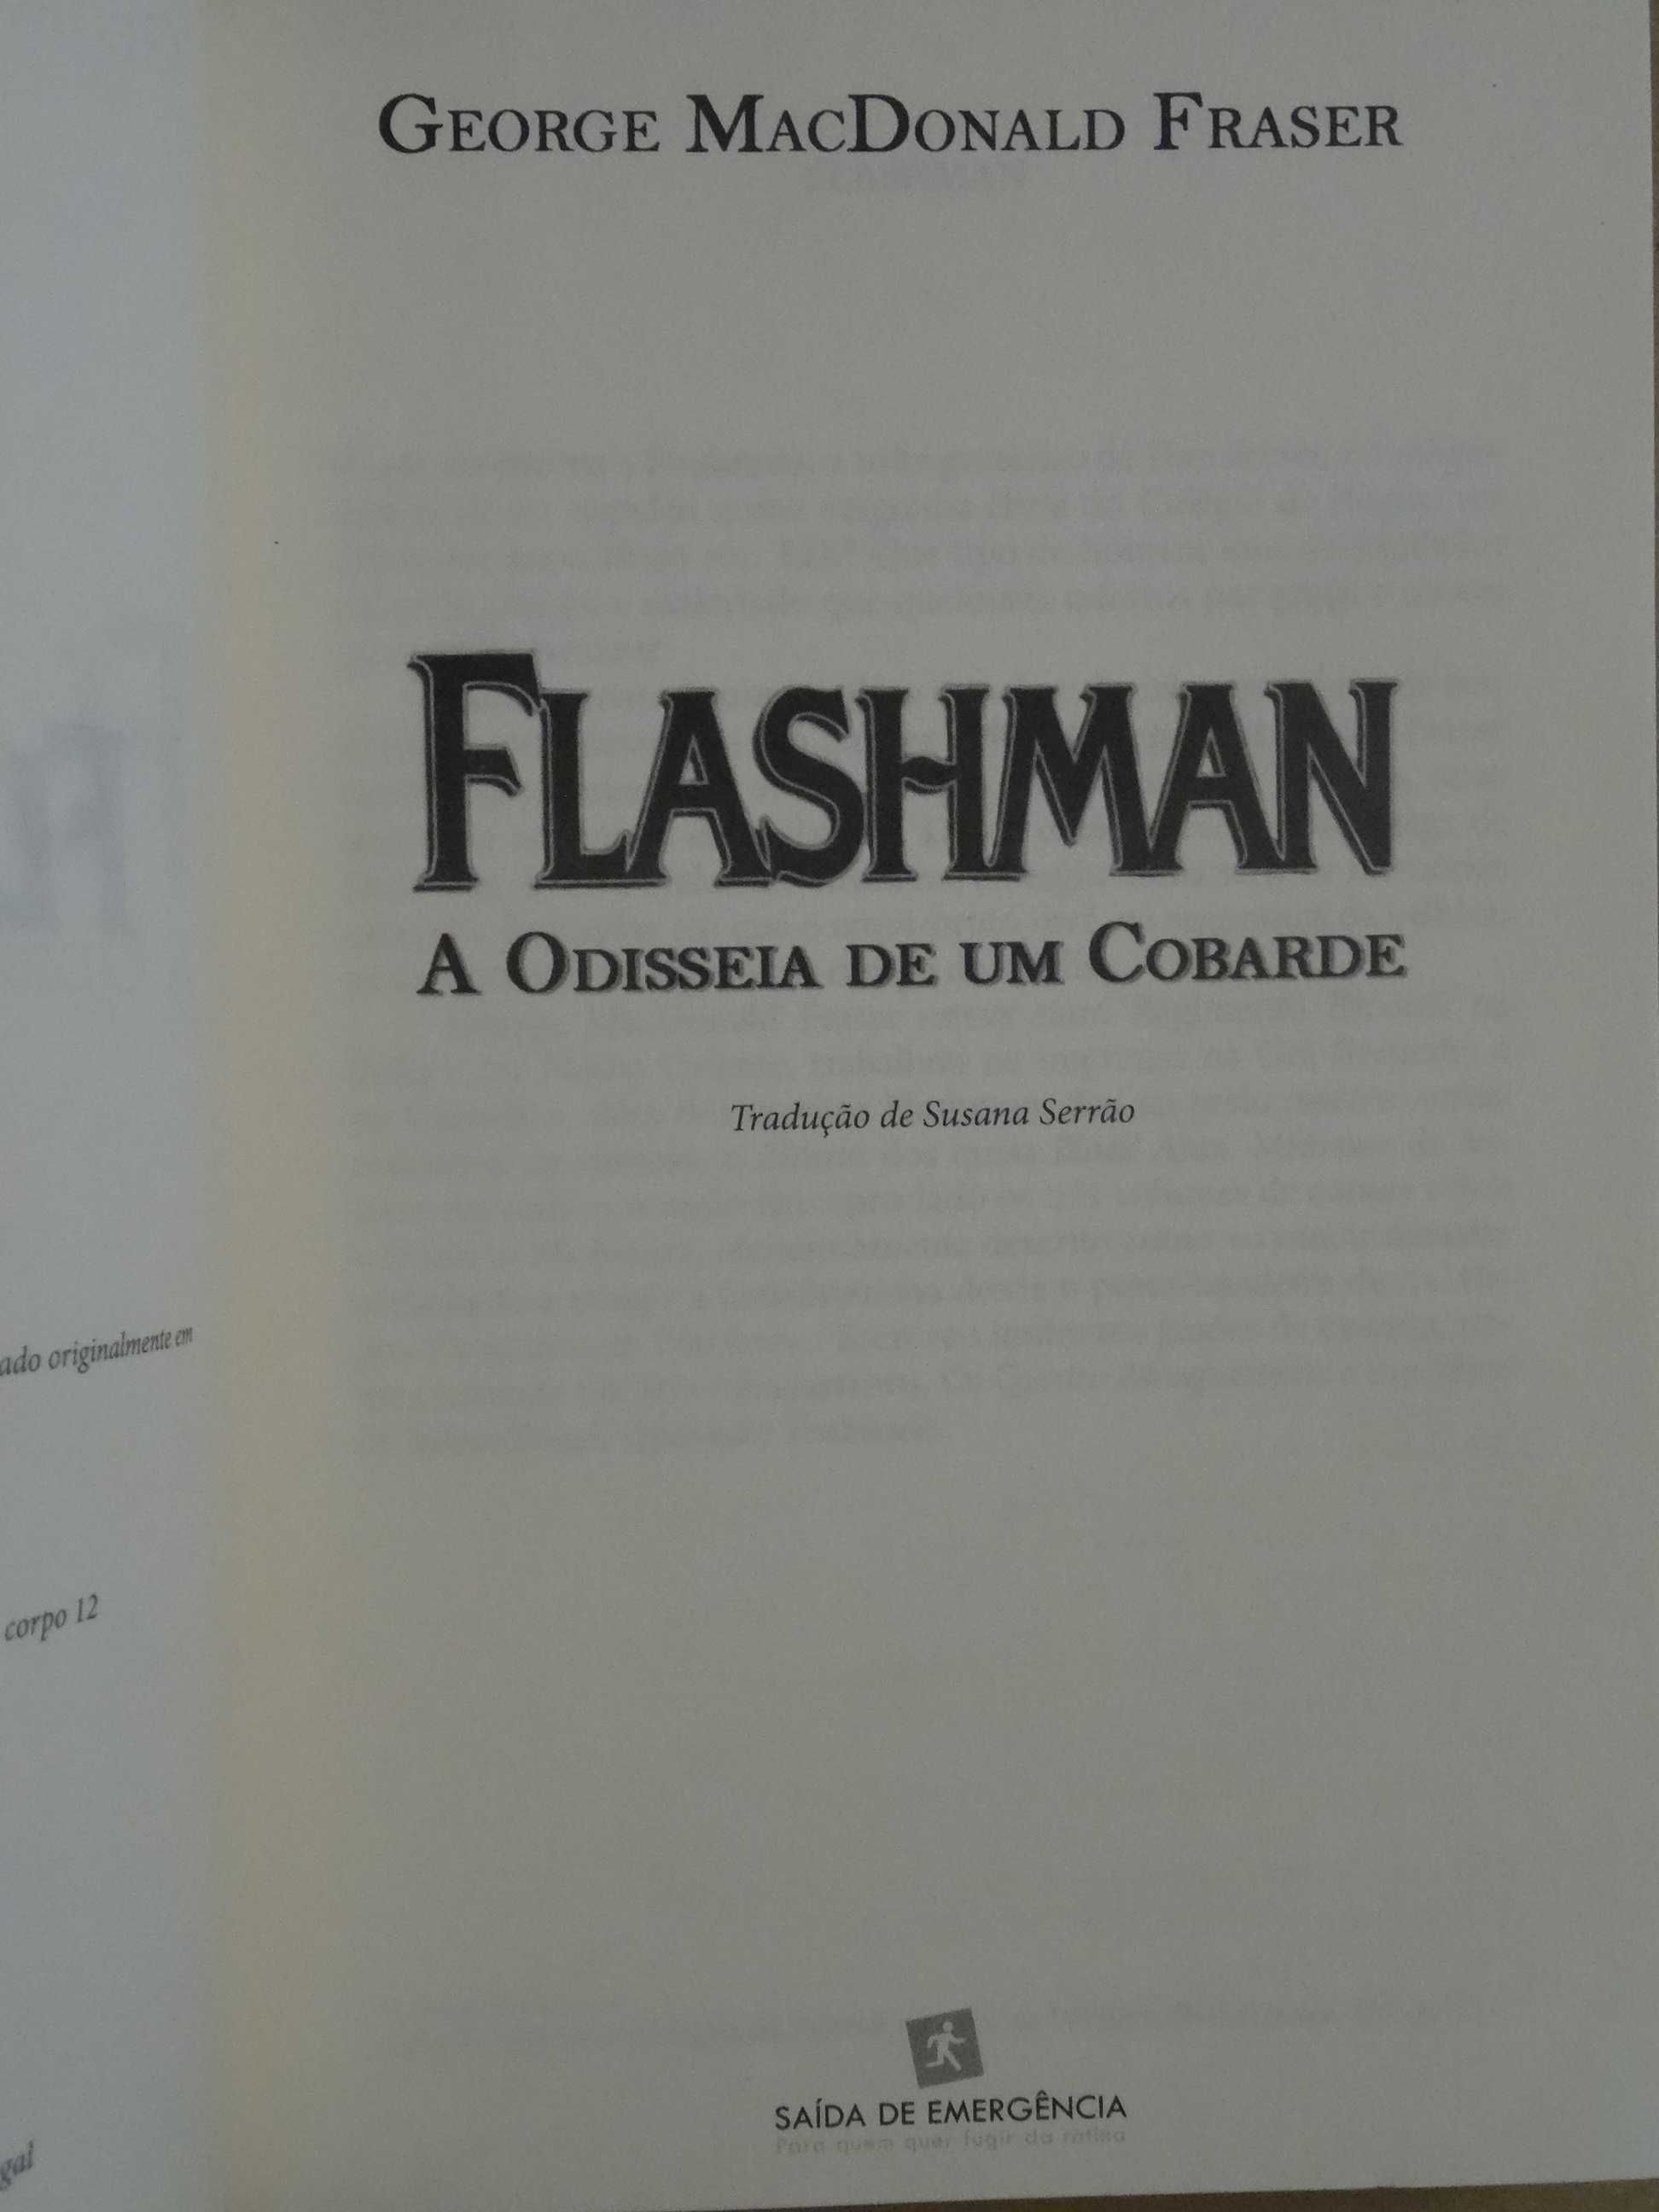 Flashman de George Macdonald Fraser - 1ª Edição